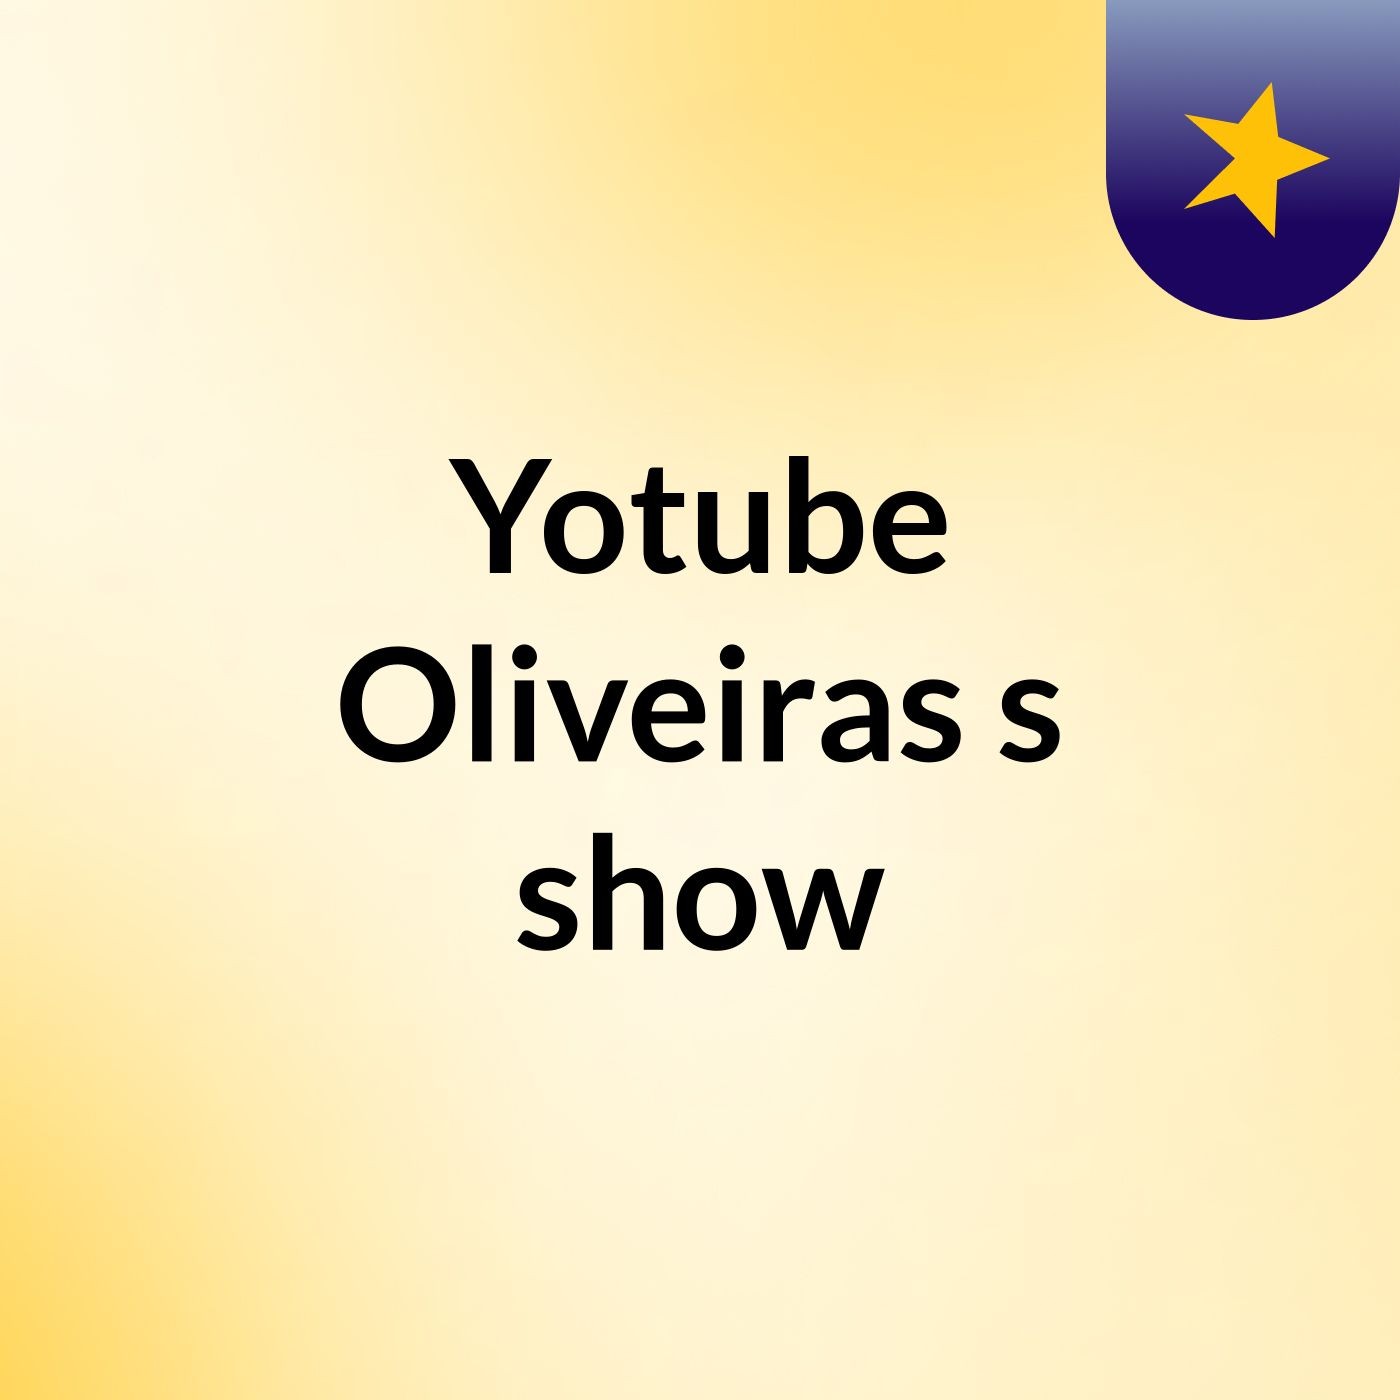 Episódio 2 - Yotube Oliveiras's show